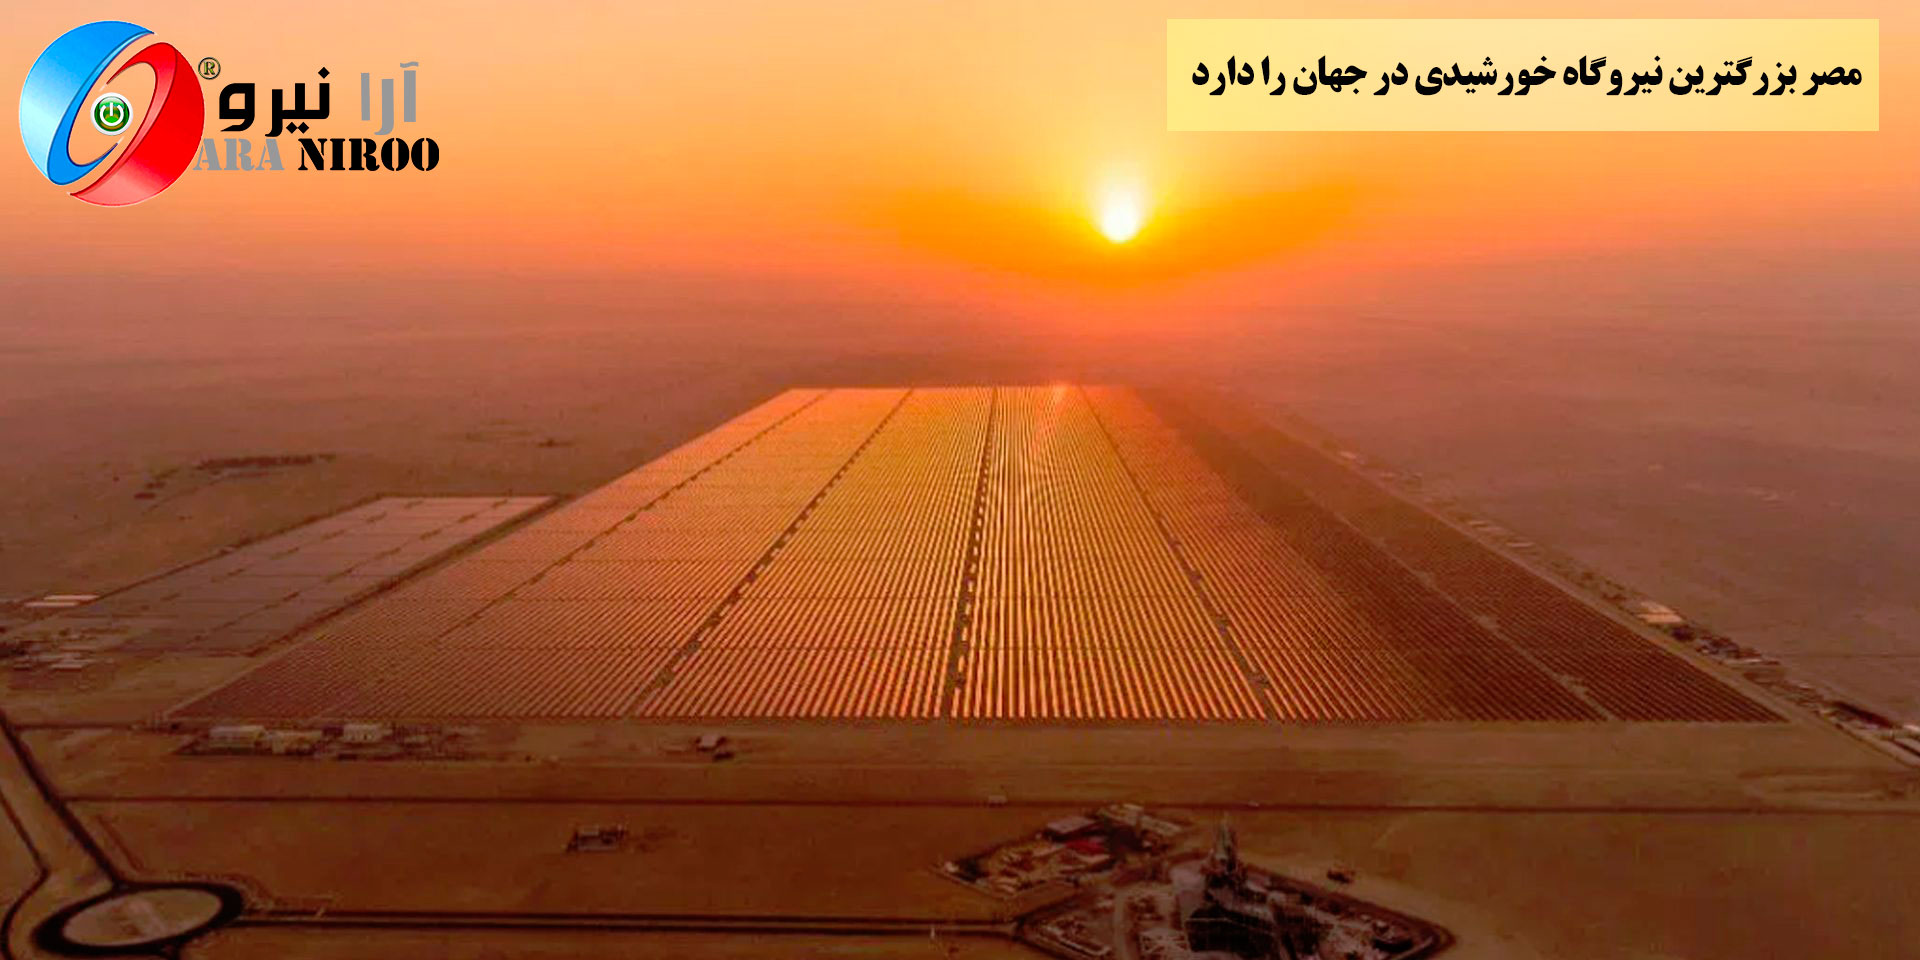 مصر اکنون بزرگترین نیروگاه خورشیدی در جهان را دارد